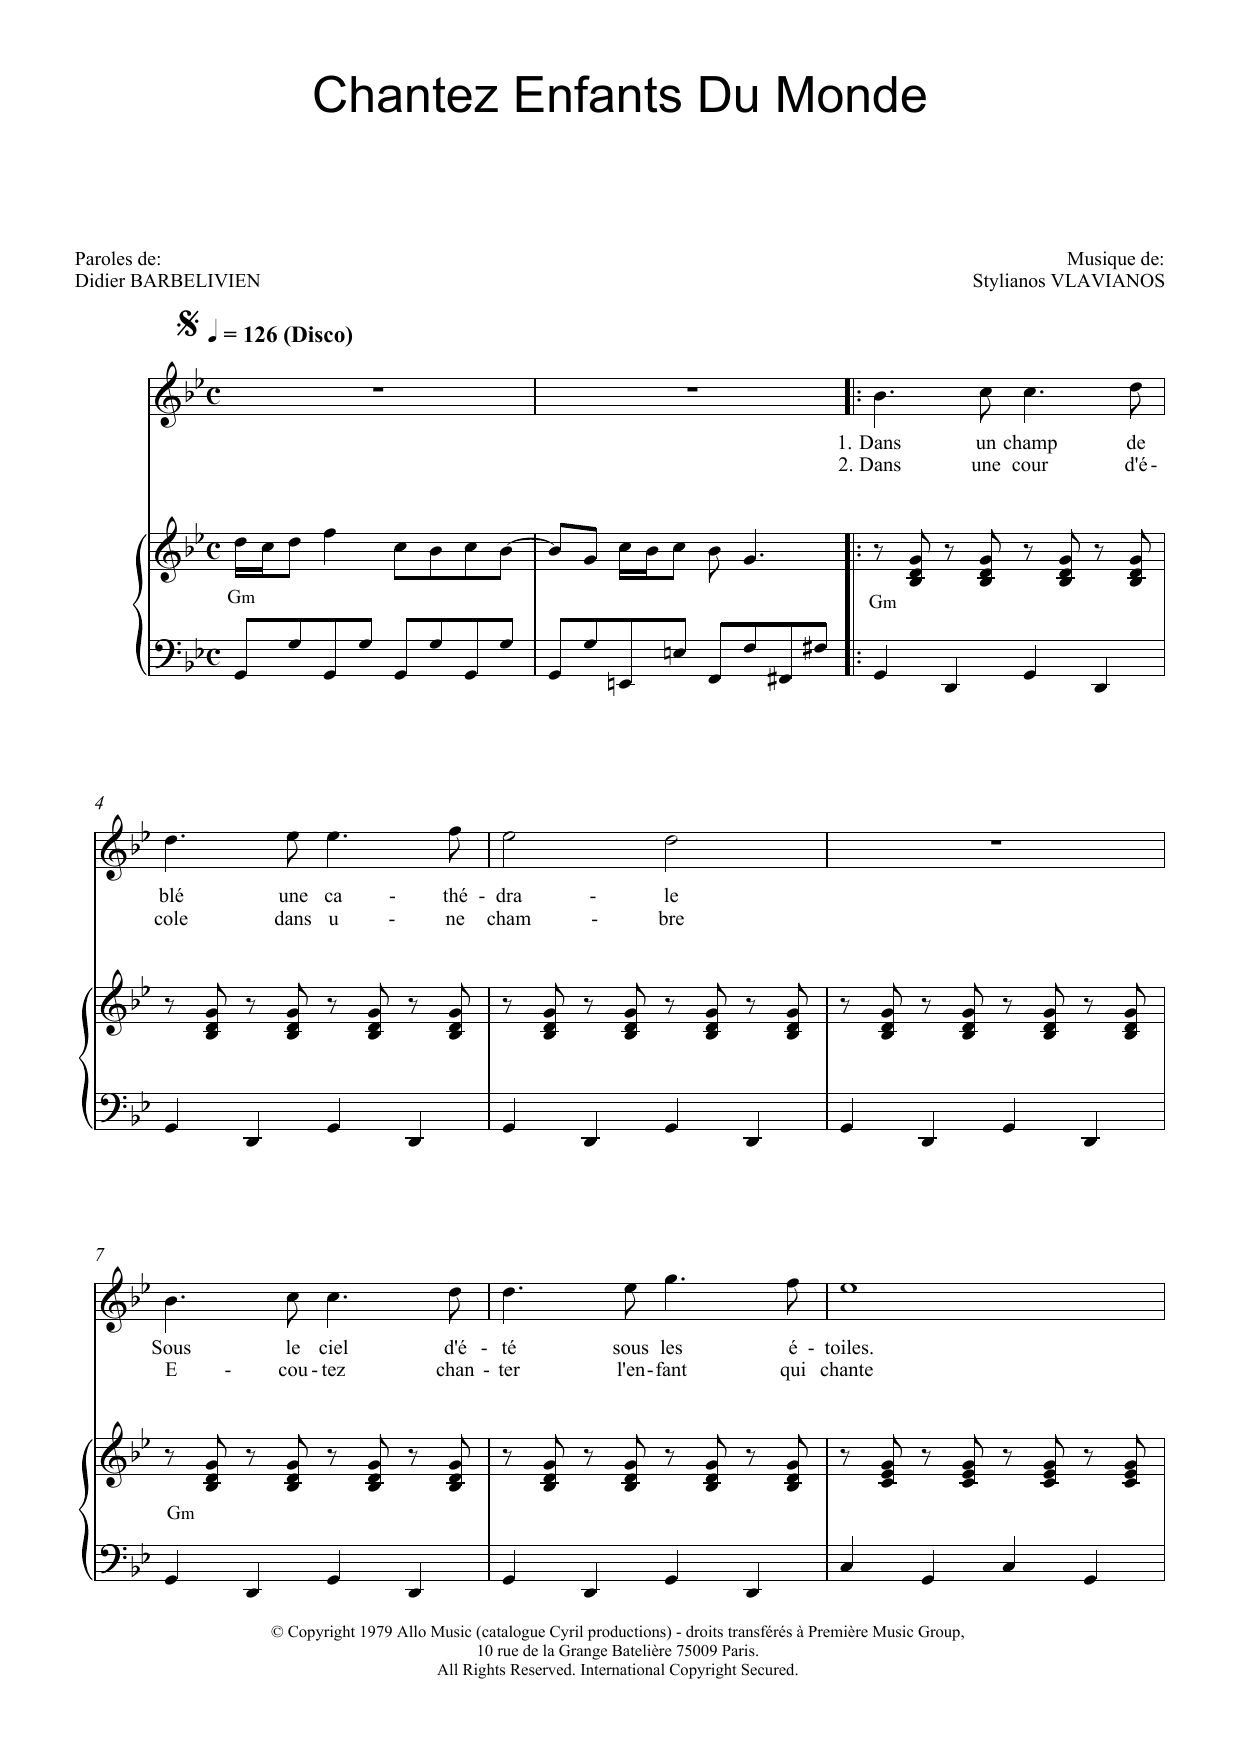 Demis Roussos Chantez Enfants Du Monde Sheet Music Notes & Chords for Piano & Vocal - Download or Print PDF